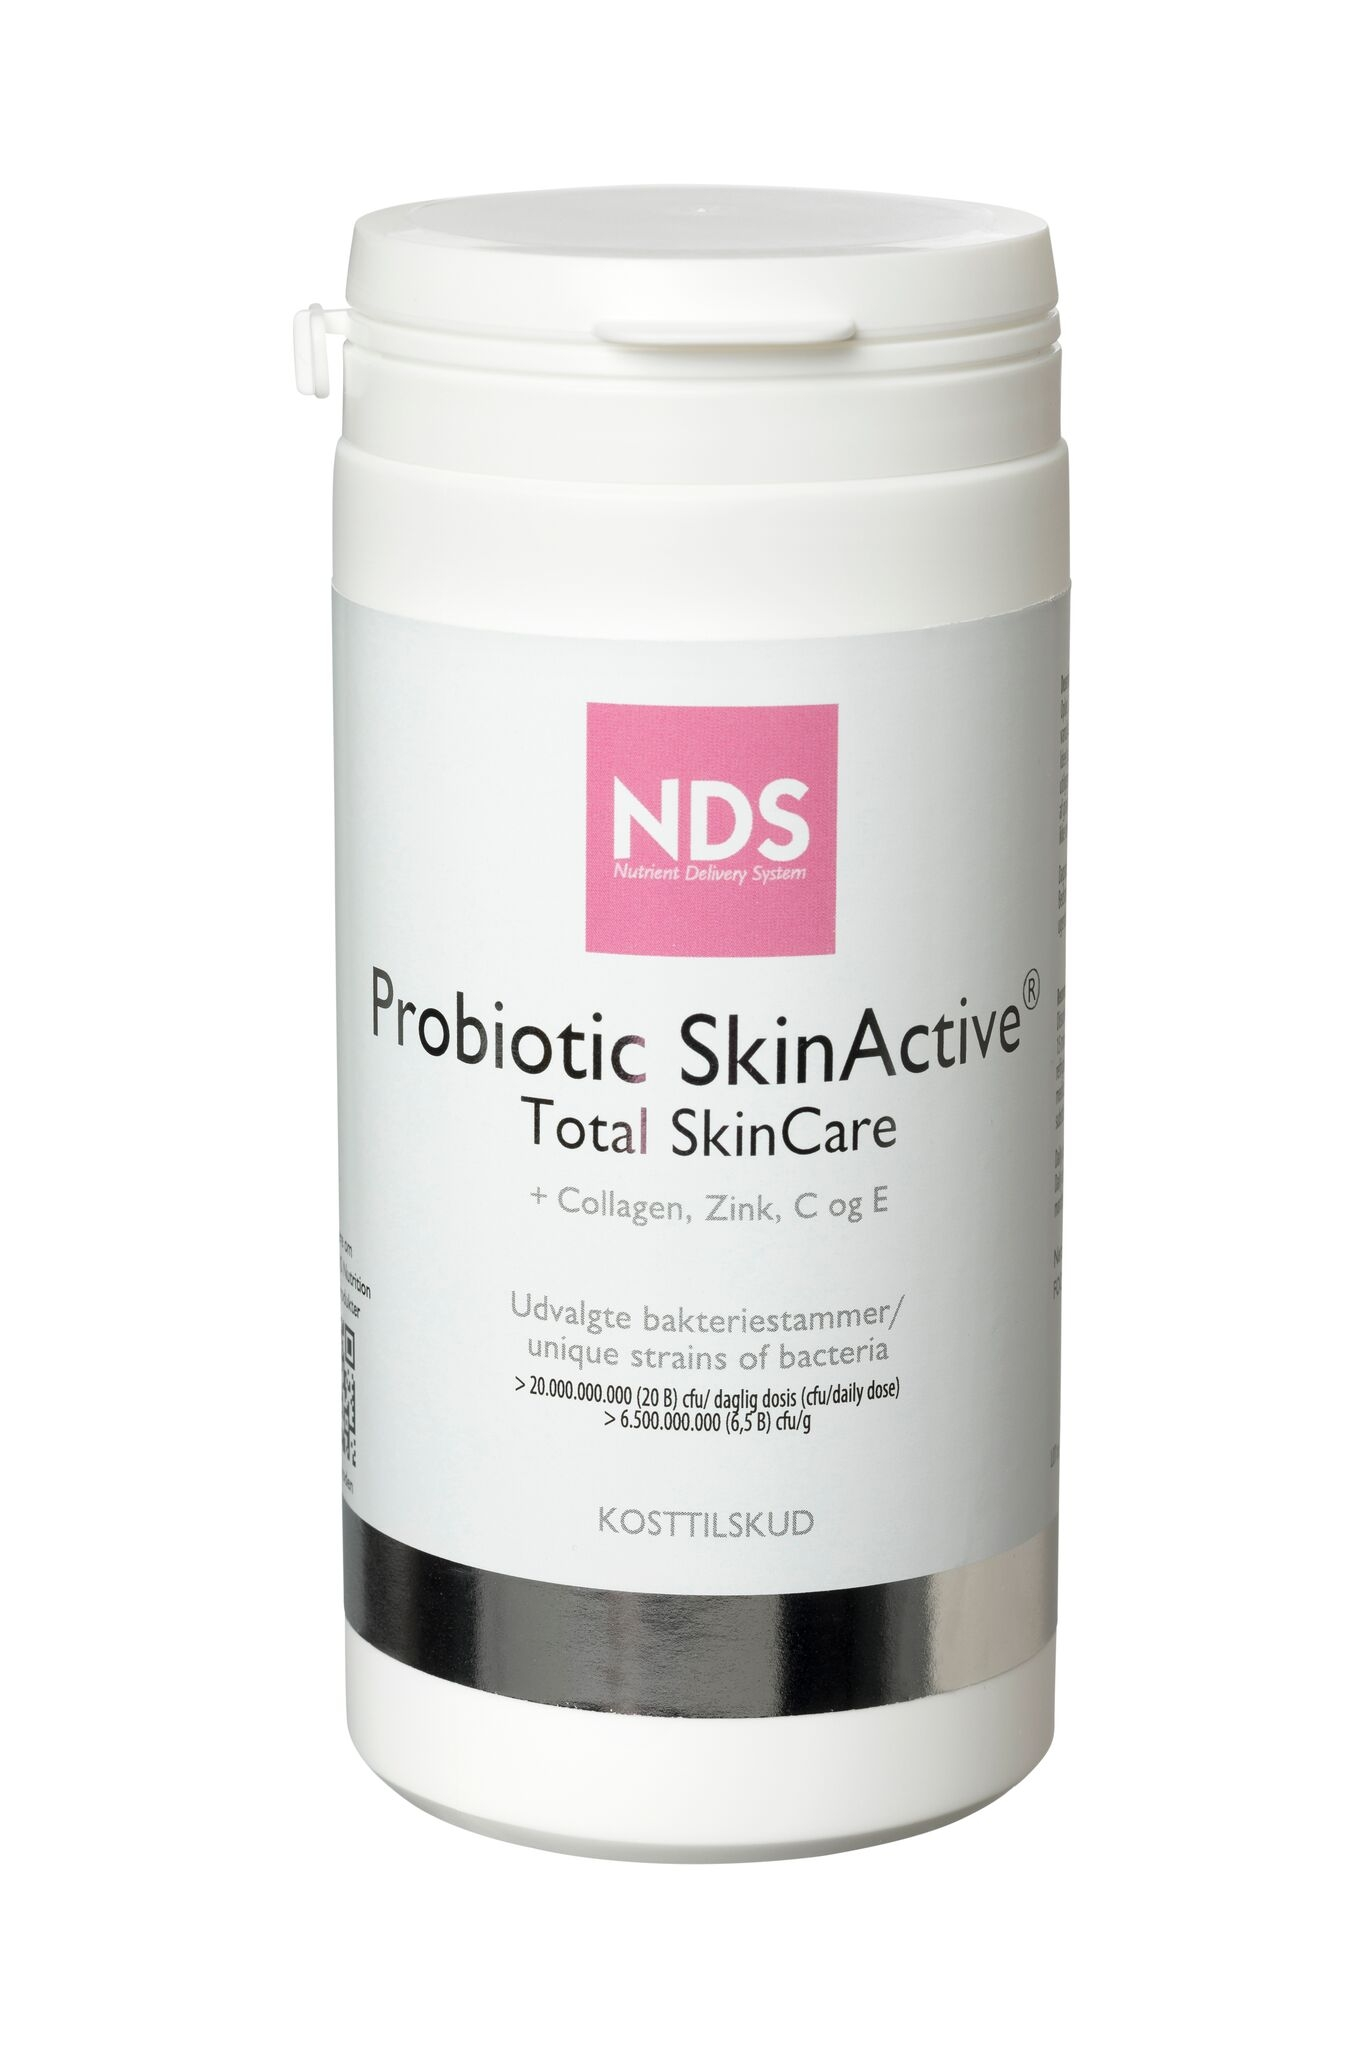 Se NDS Probiotic Skin active Total skincare - 180 gram hos Well.dk